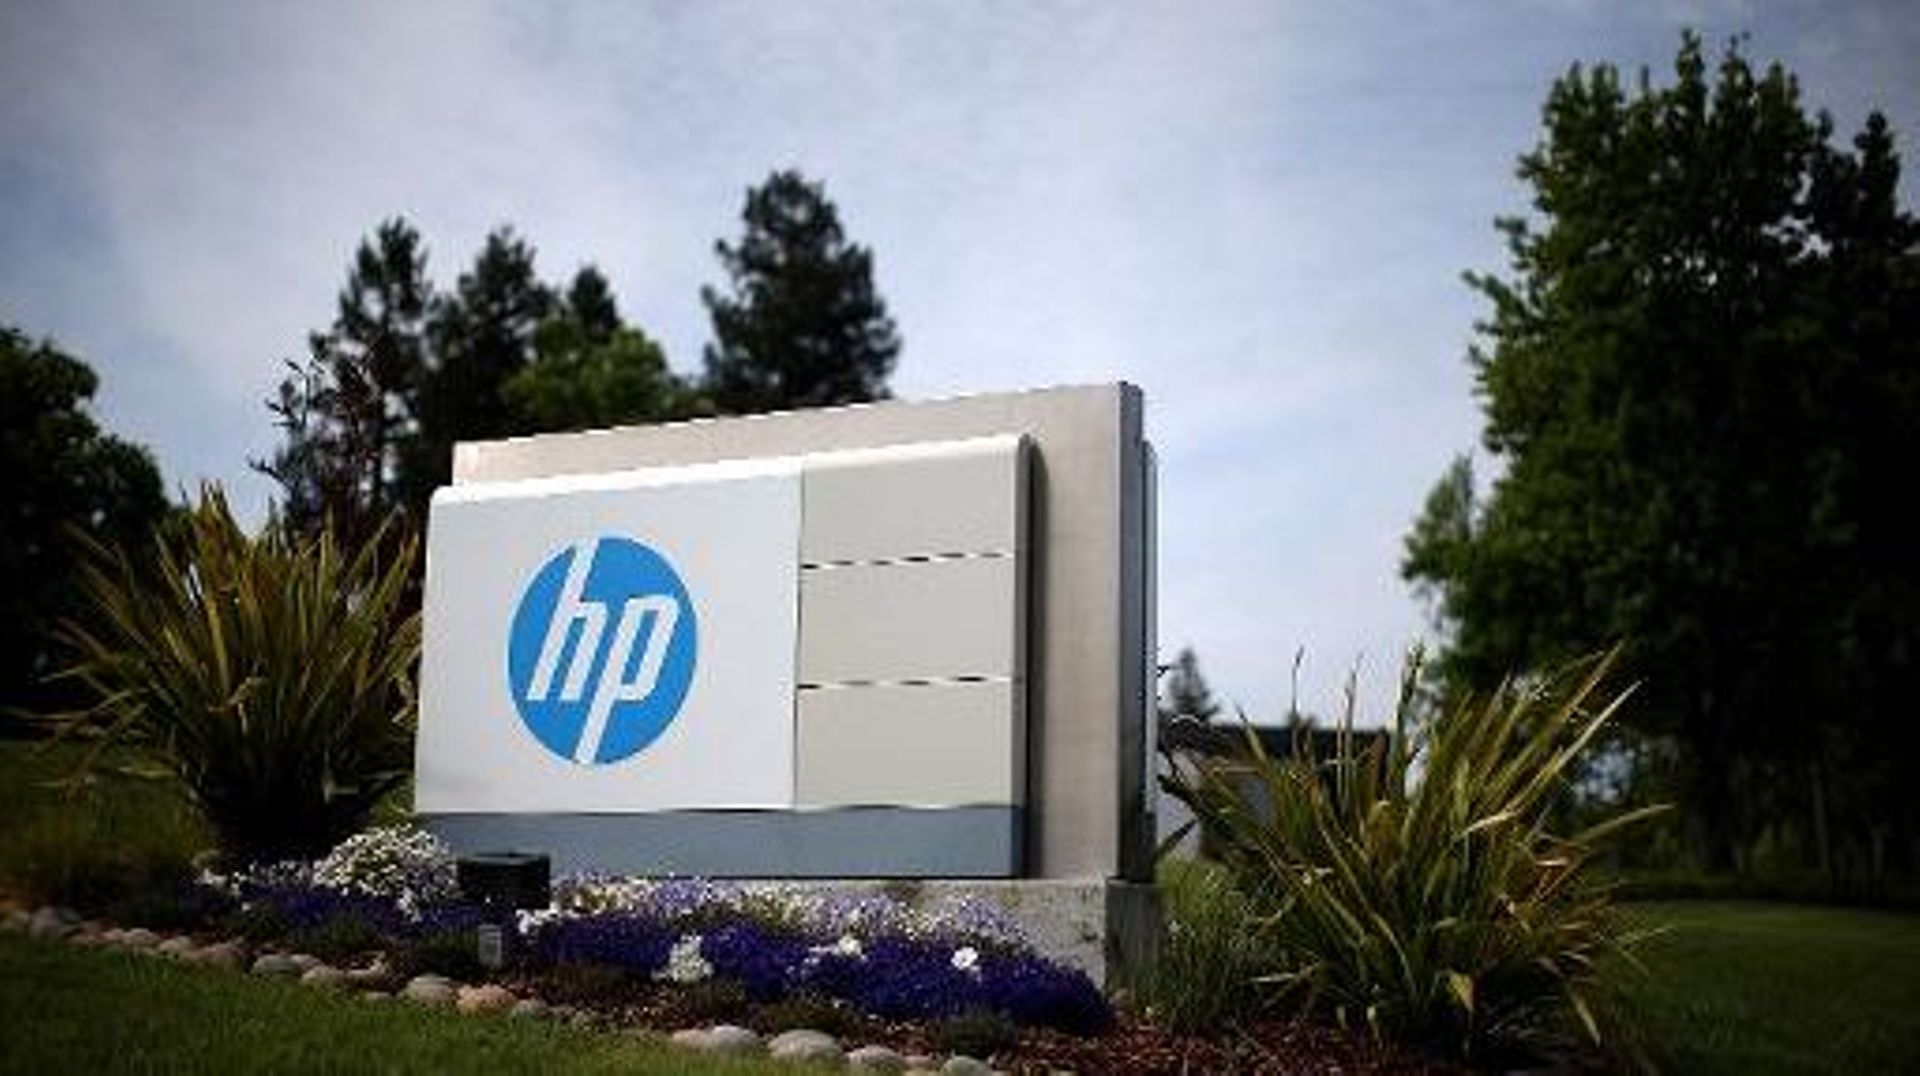 HP a prévu de se scinder plus tard cette année en deux sociétés distinctes: HP Enterprise, qui se concentrera sur les services, et HP Inc, qui rassemblera les activités dans les PC et imprimantes